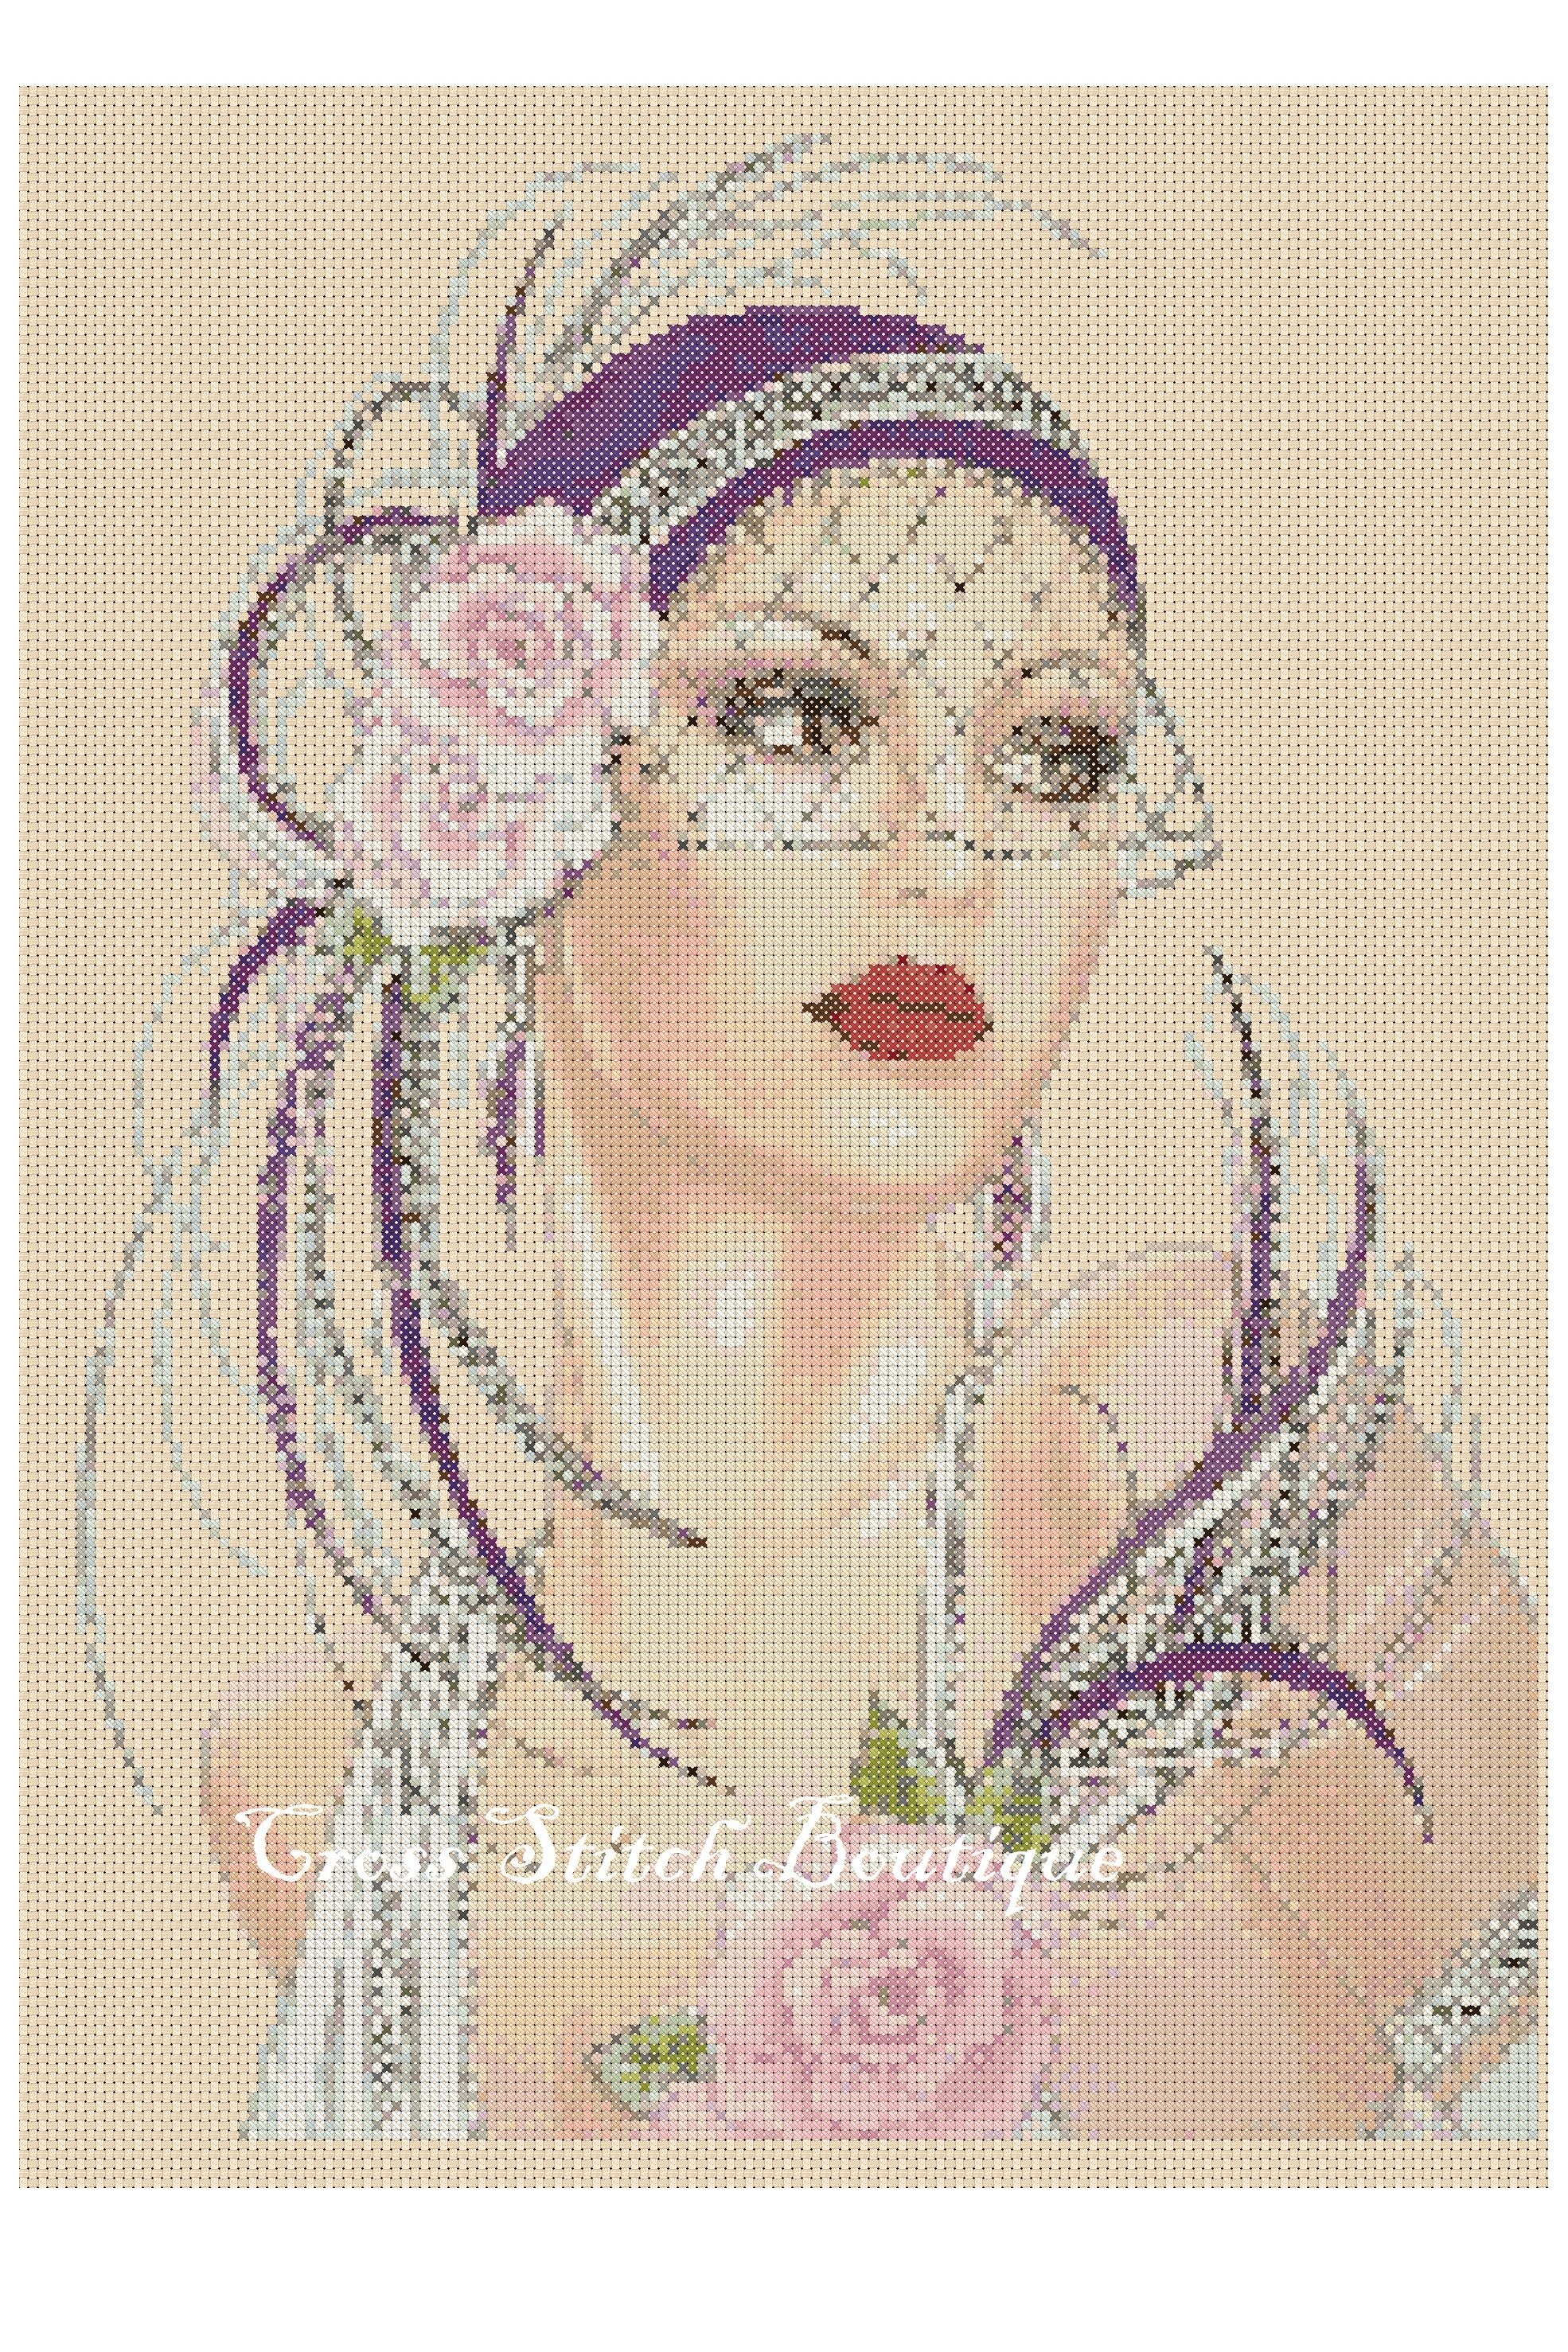 Cross stitch chart  Art Deco Lady 6 Flowerpower37-uk.-.free uk P&p... 